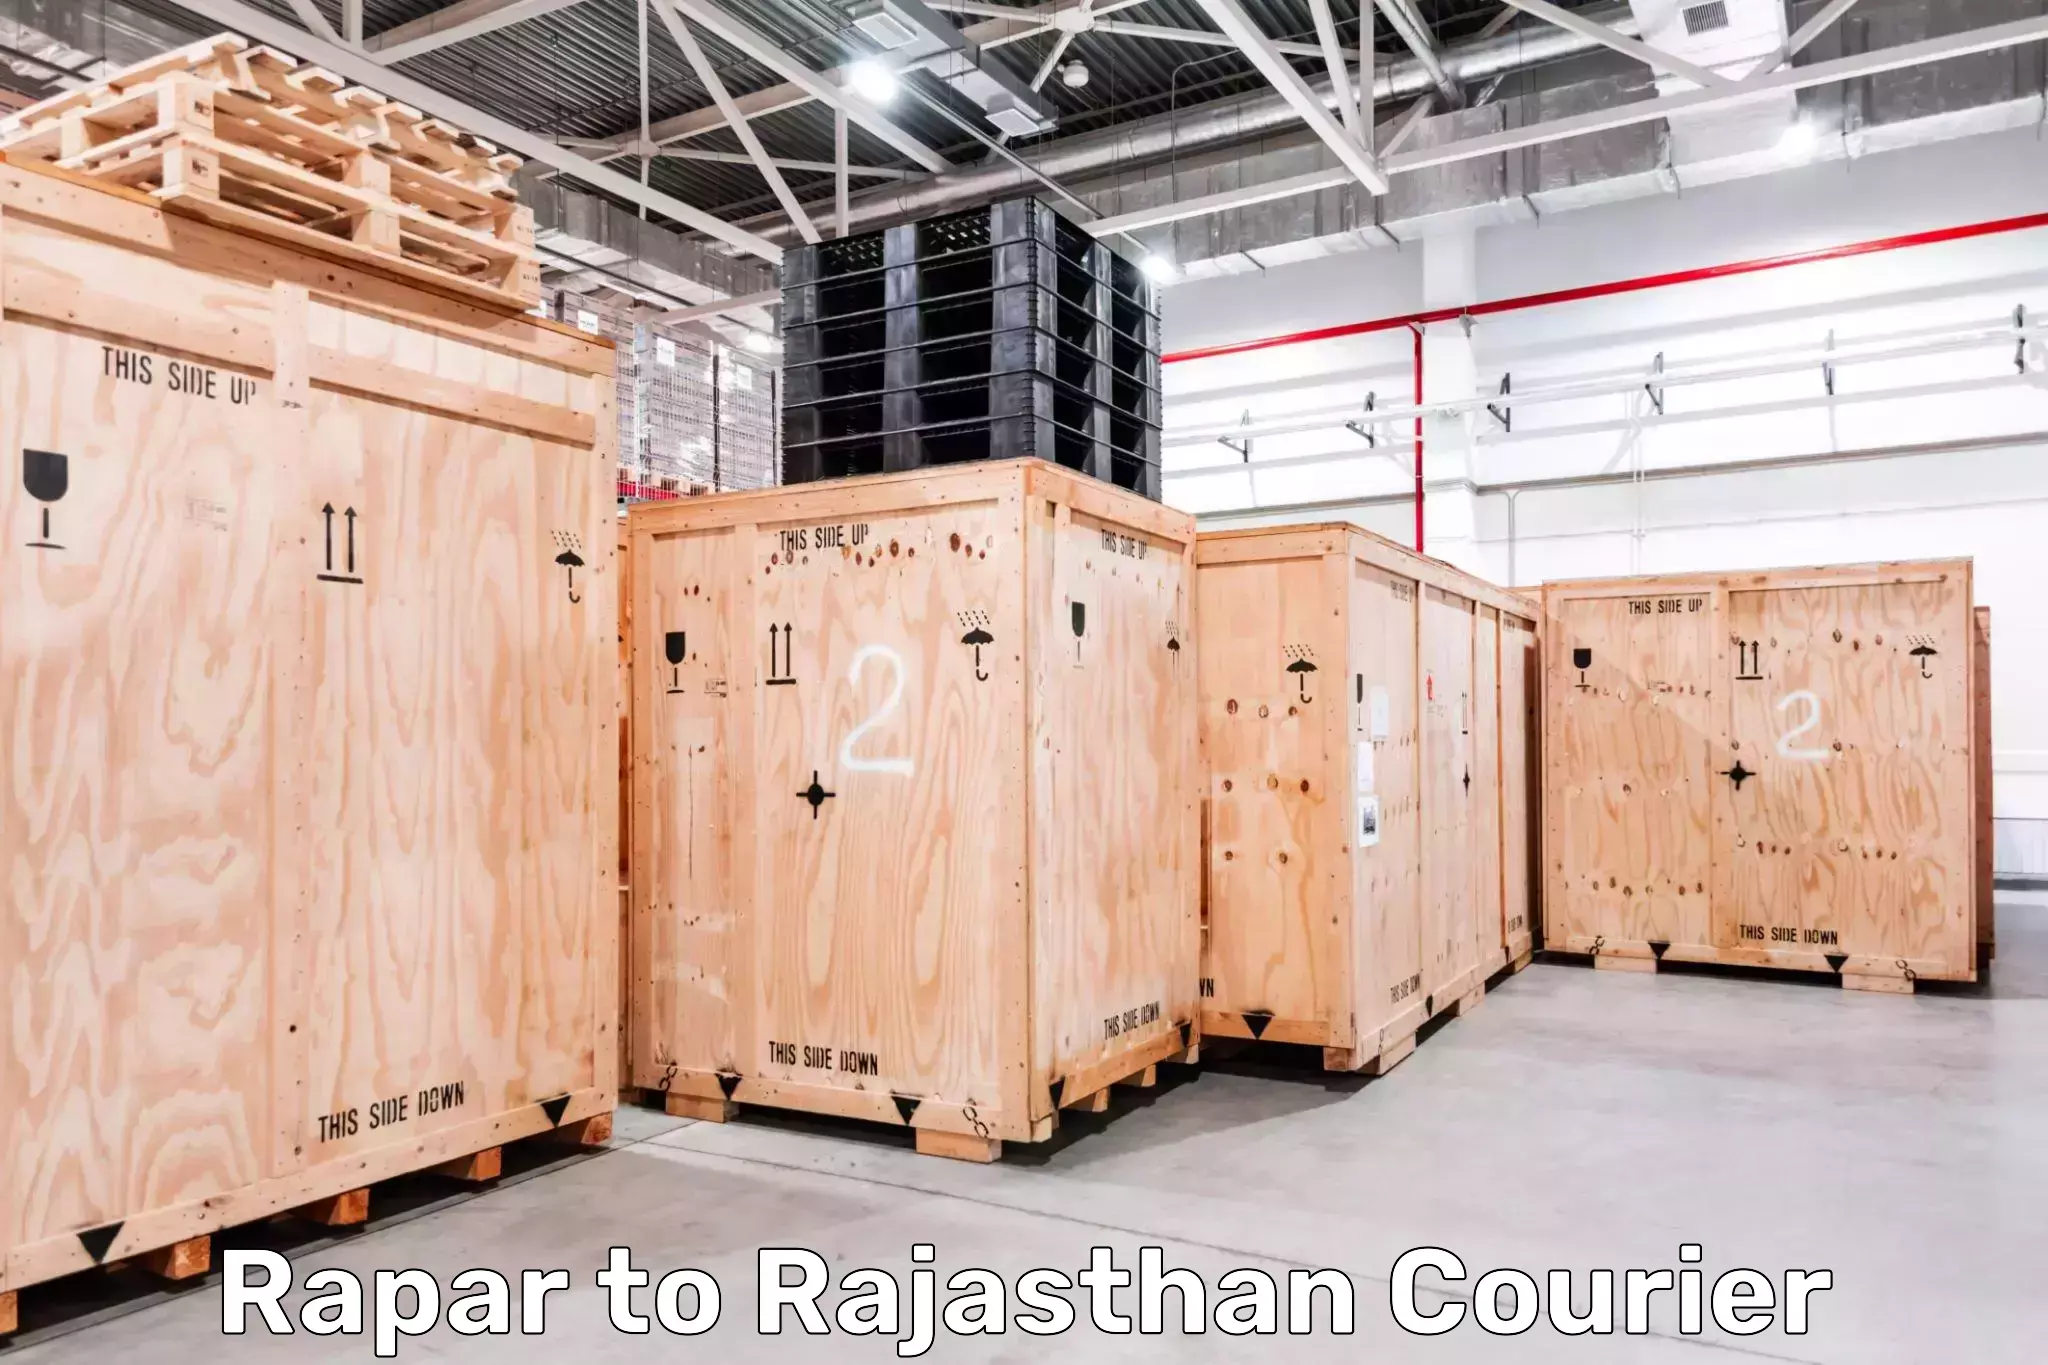 High-capacity parcel service Rapar to Lalsot